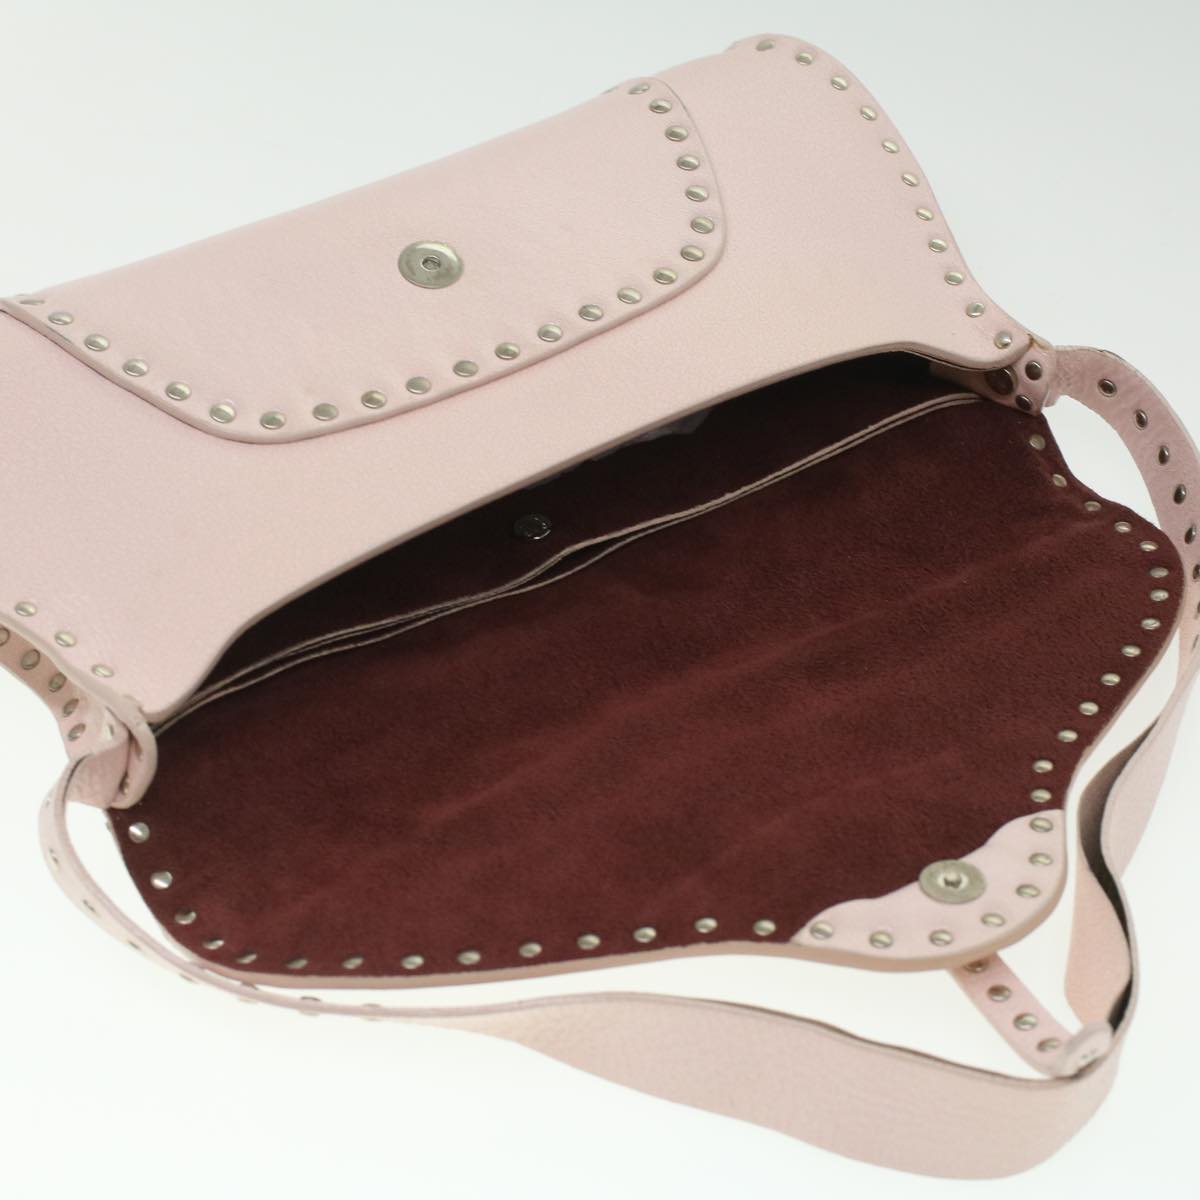 CELINE Studs Shoulder Bag Leather Pink CE00/23 Auth am3799